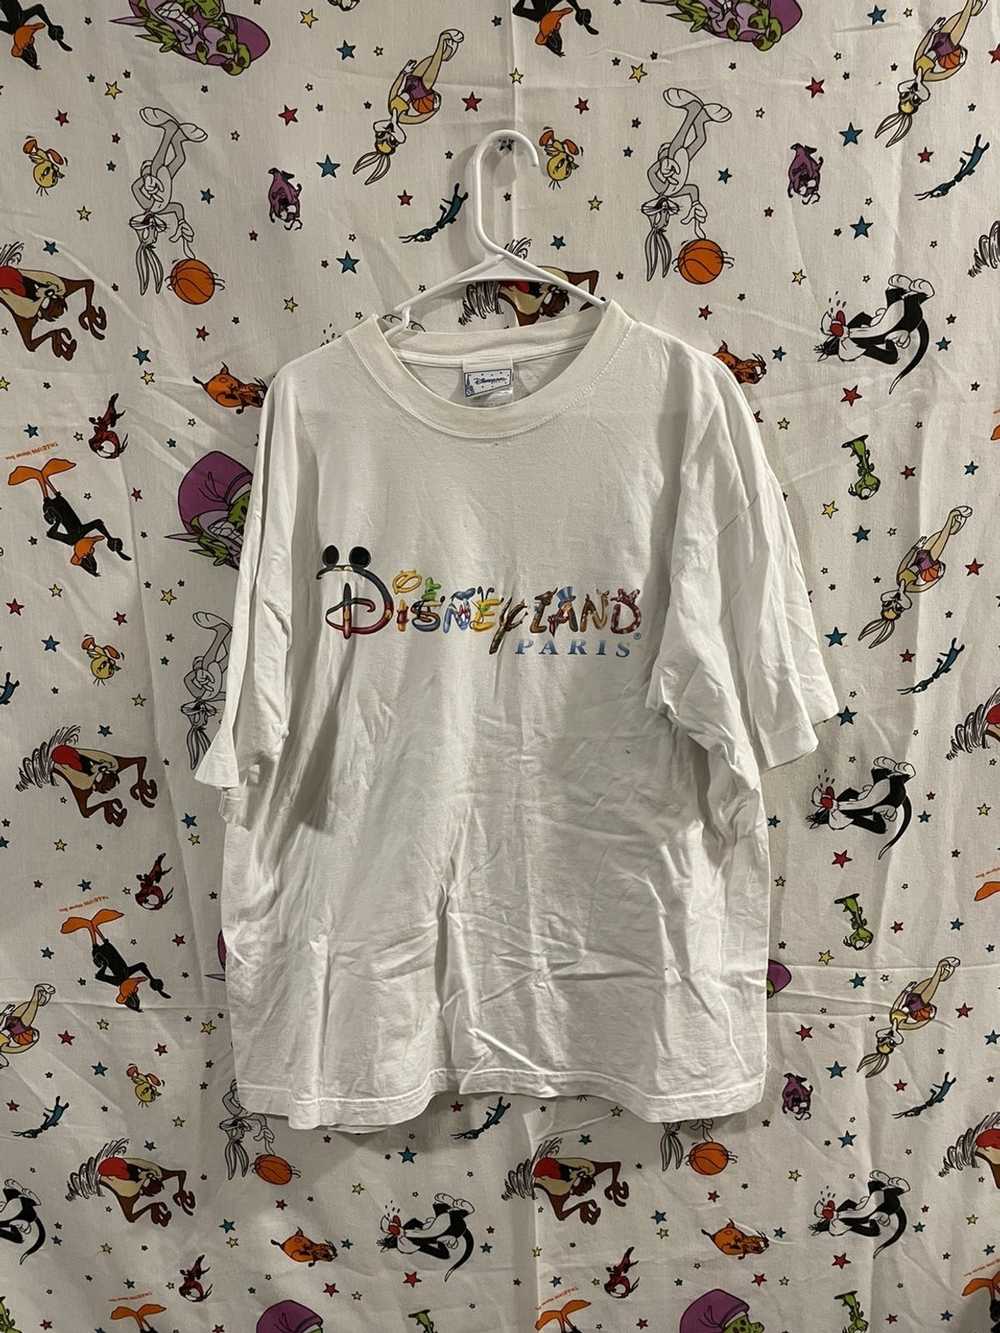 Streetwear × Vintage Disney Paris tshirt - image 1